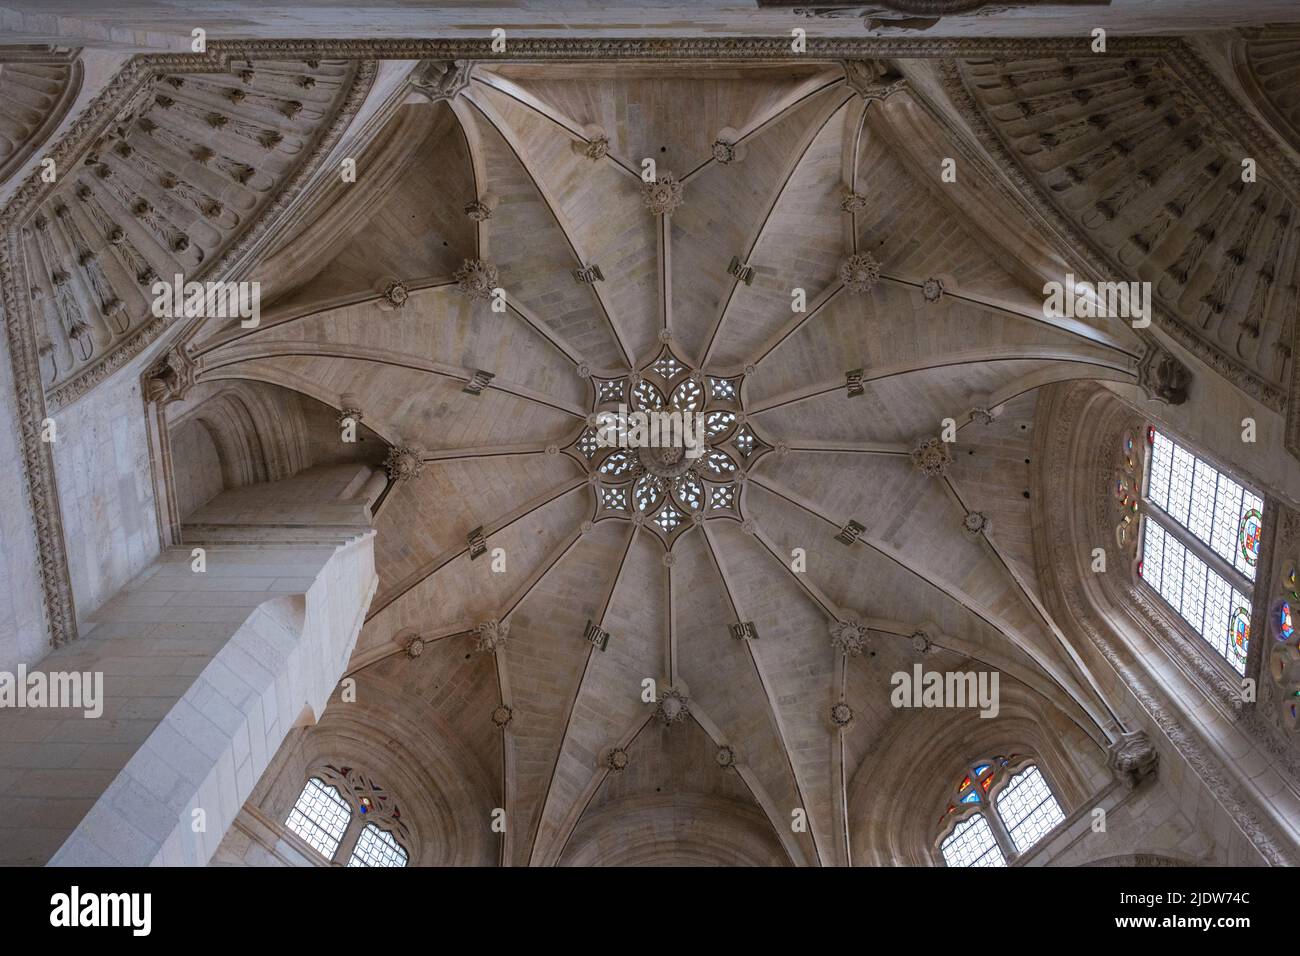 Spagna, Burgos. Cattedrale di Santa Maria. Soffitto Gotico-Mudejar, Cappella della Presentazione, Capilla de la Presentacion, 15-16th secolo. Foto Stock